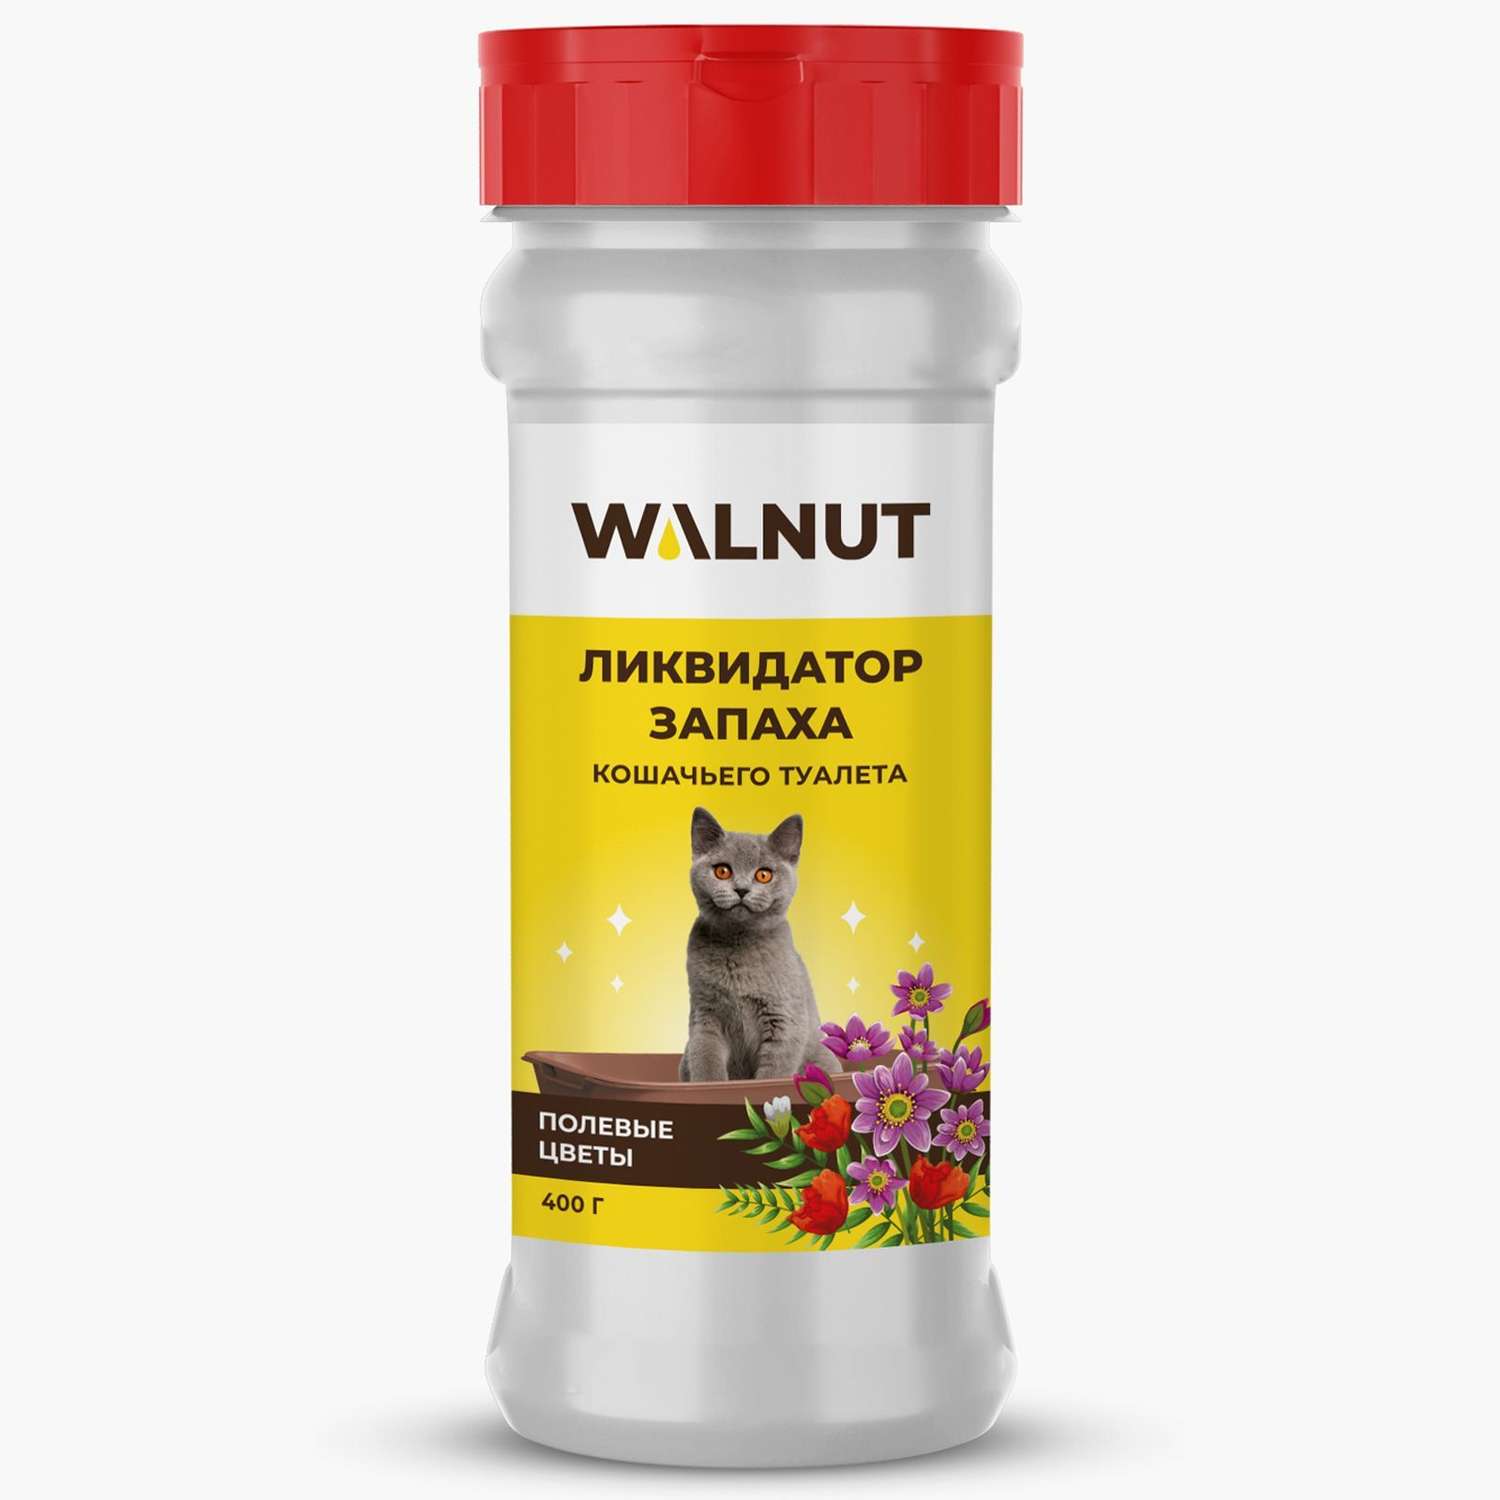 Ликвидатор запаха WALNUT WLN0468 - фото 1